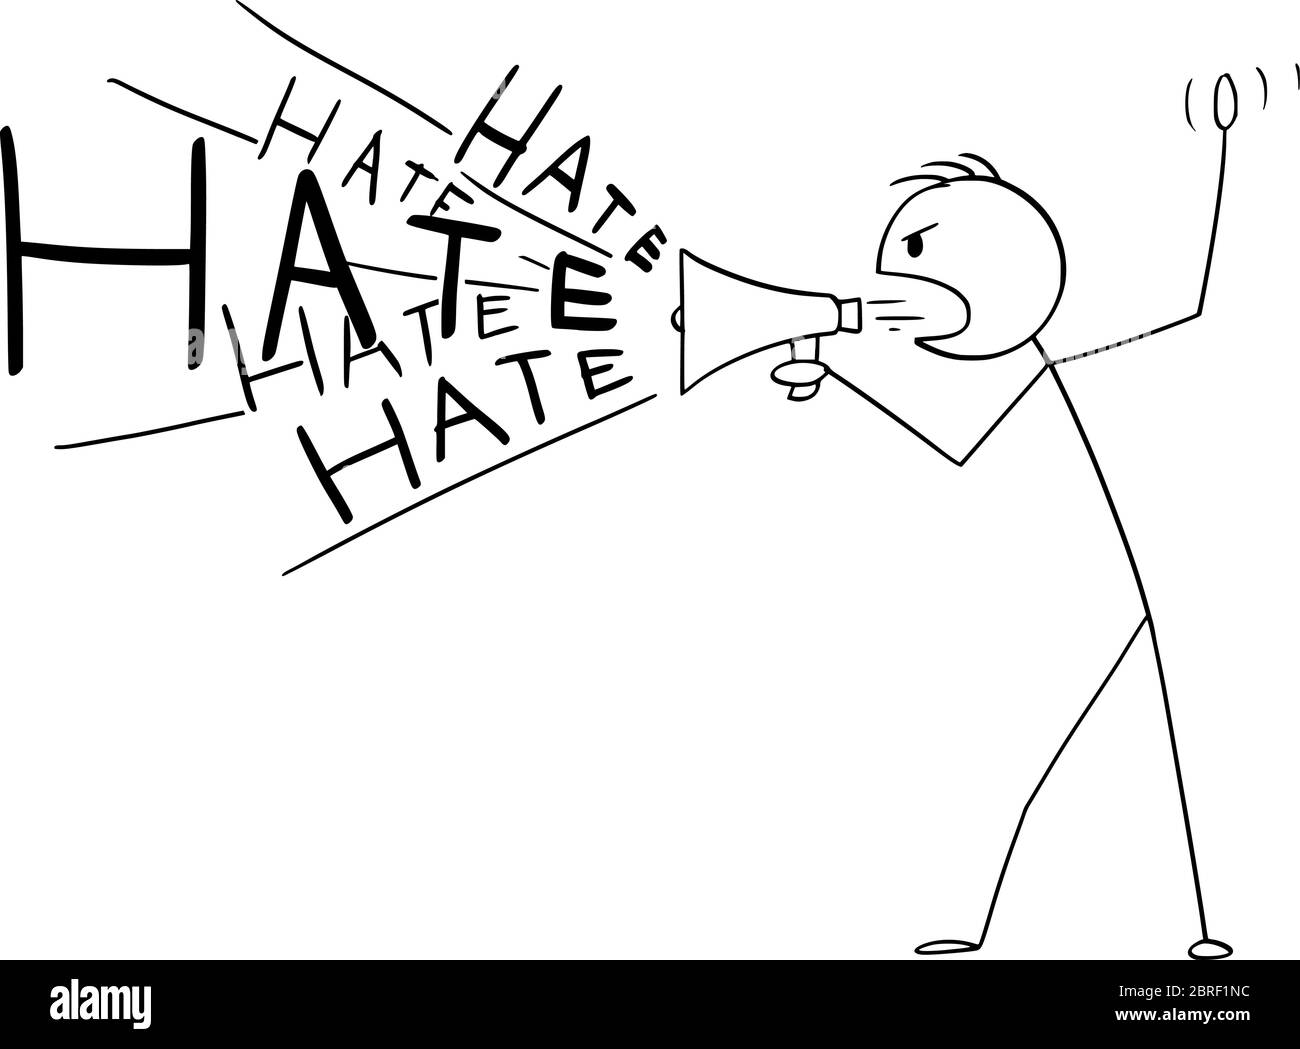 Figura vettoriale del cartone disegnando illustrazione concettuale dell'uomo o del politico che usa un altoparlante o un megafono per diffondere l'odio o la propaganda. Illustrazione Vettoriale